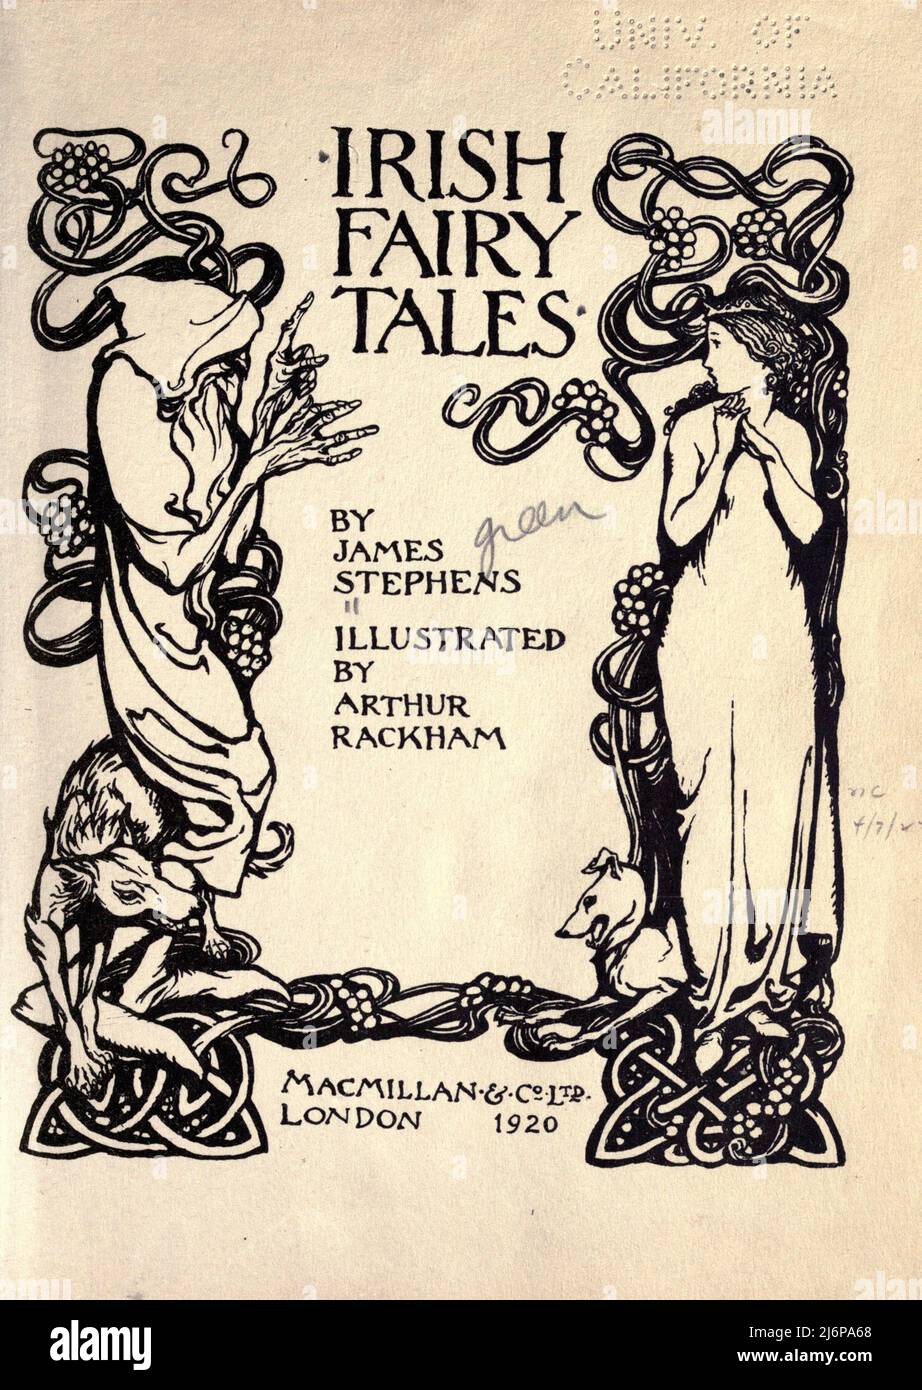 Titelseite aus dem Buch "Irische Märchen" von James Stephens, illustriert von Arthur Rackham Verlag The Macmillan company London 1920 Stockfoto